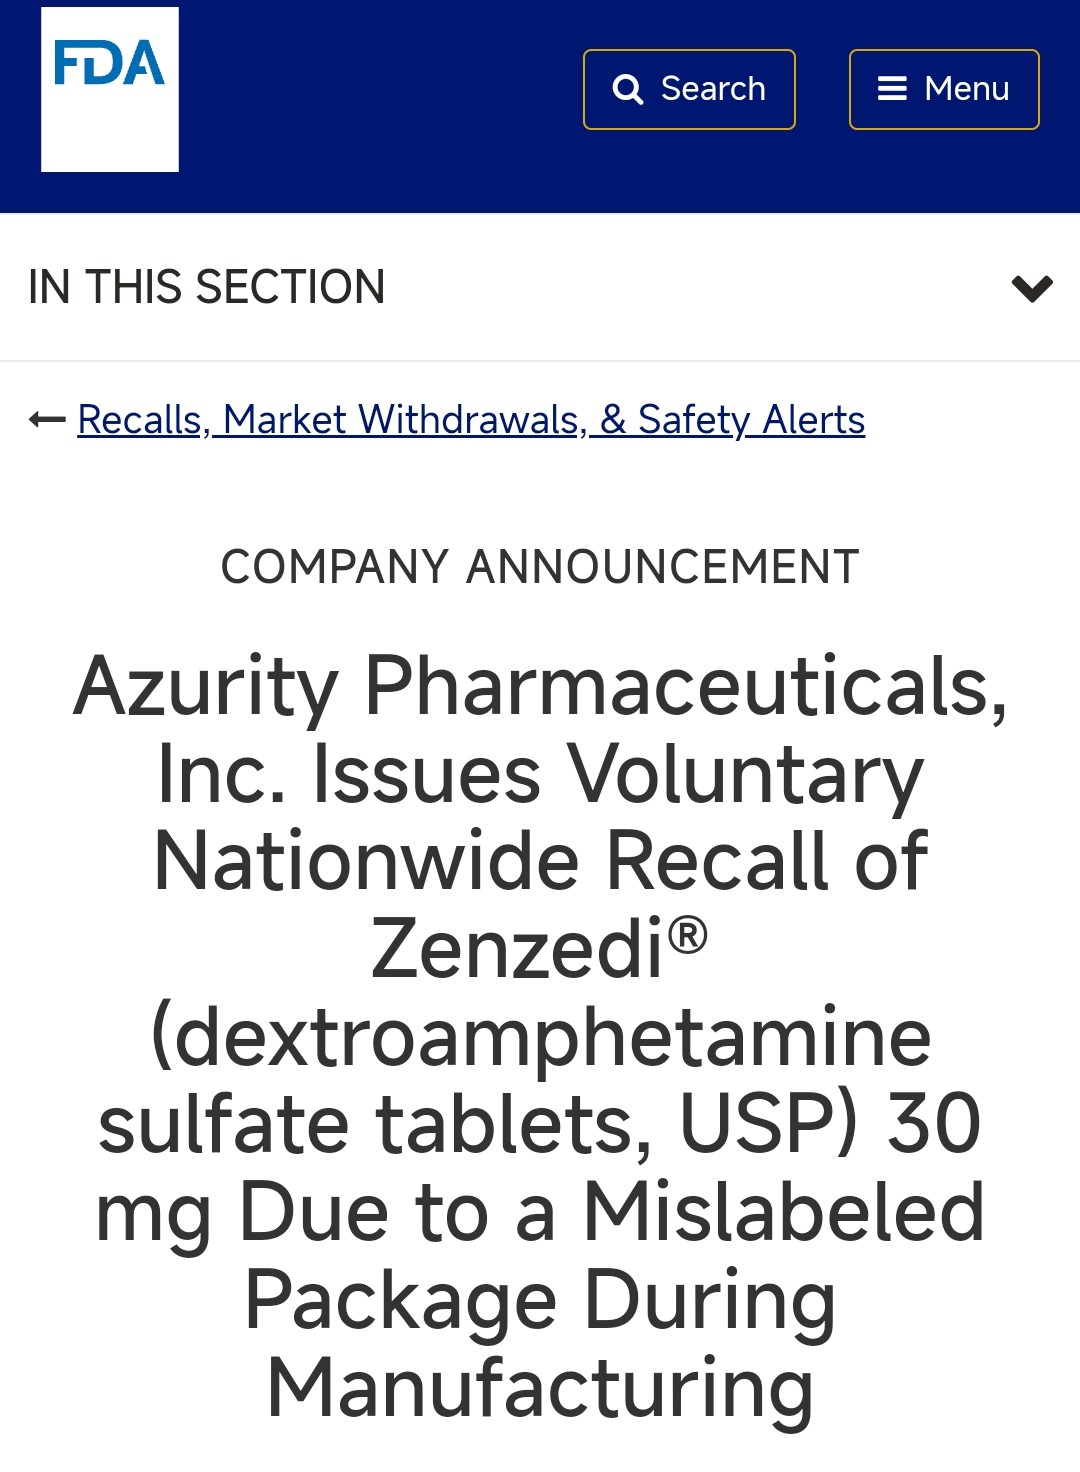 FDA发布公告召回一款硫酸右旋苯 丙胺片，原因是贴错标签。